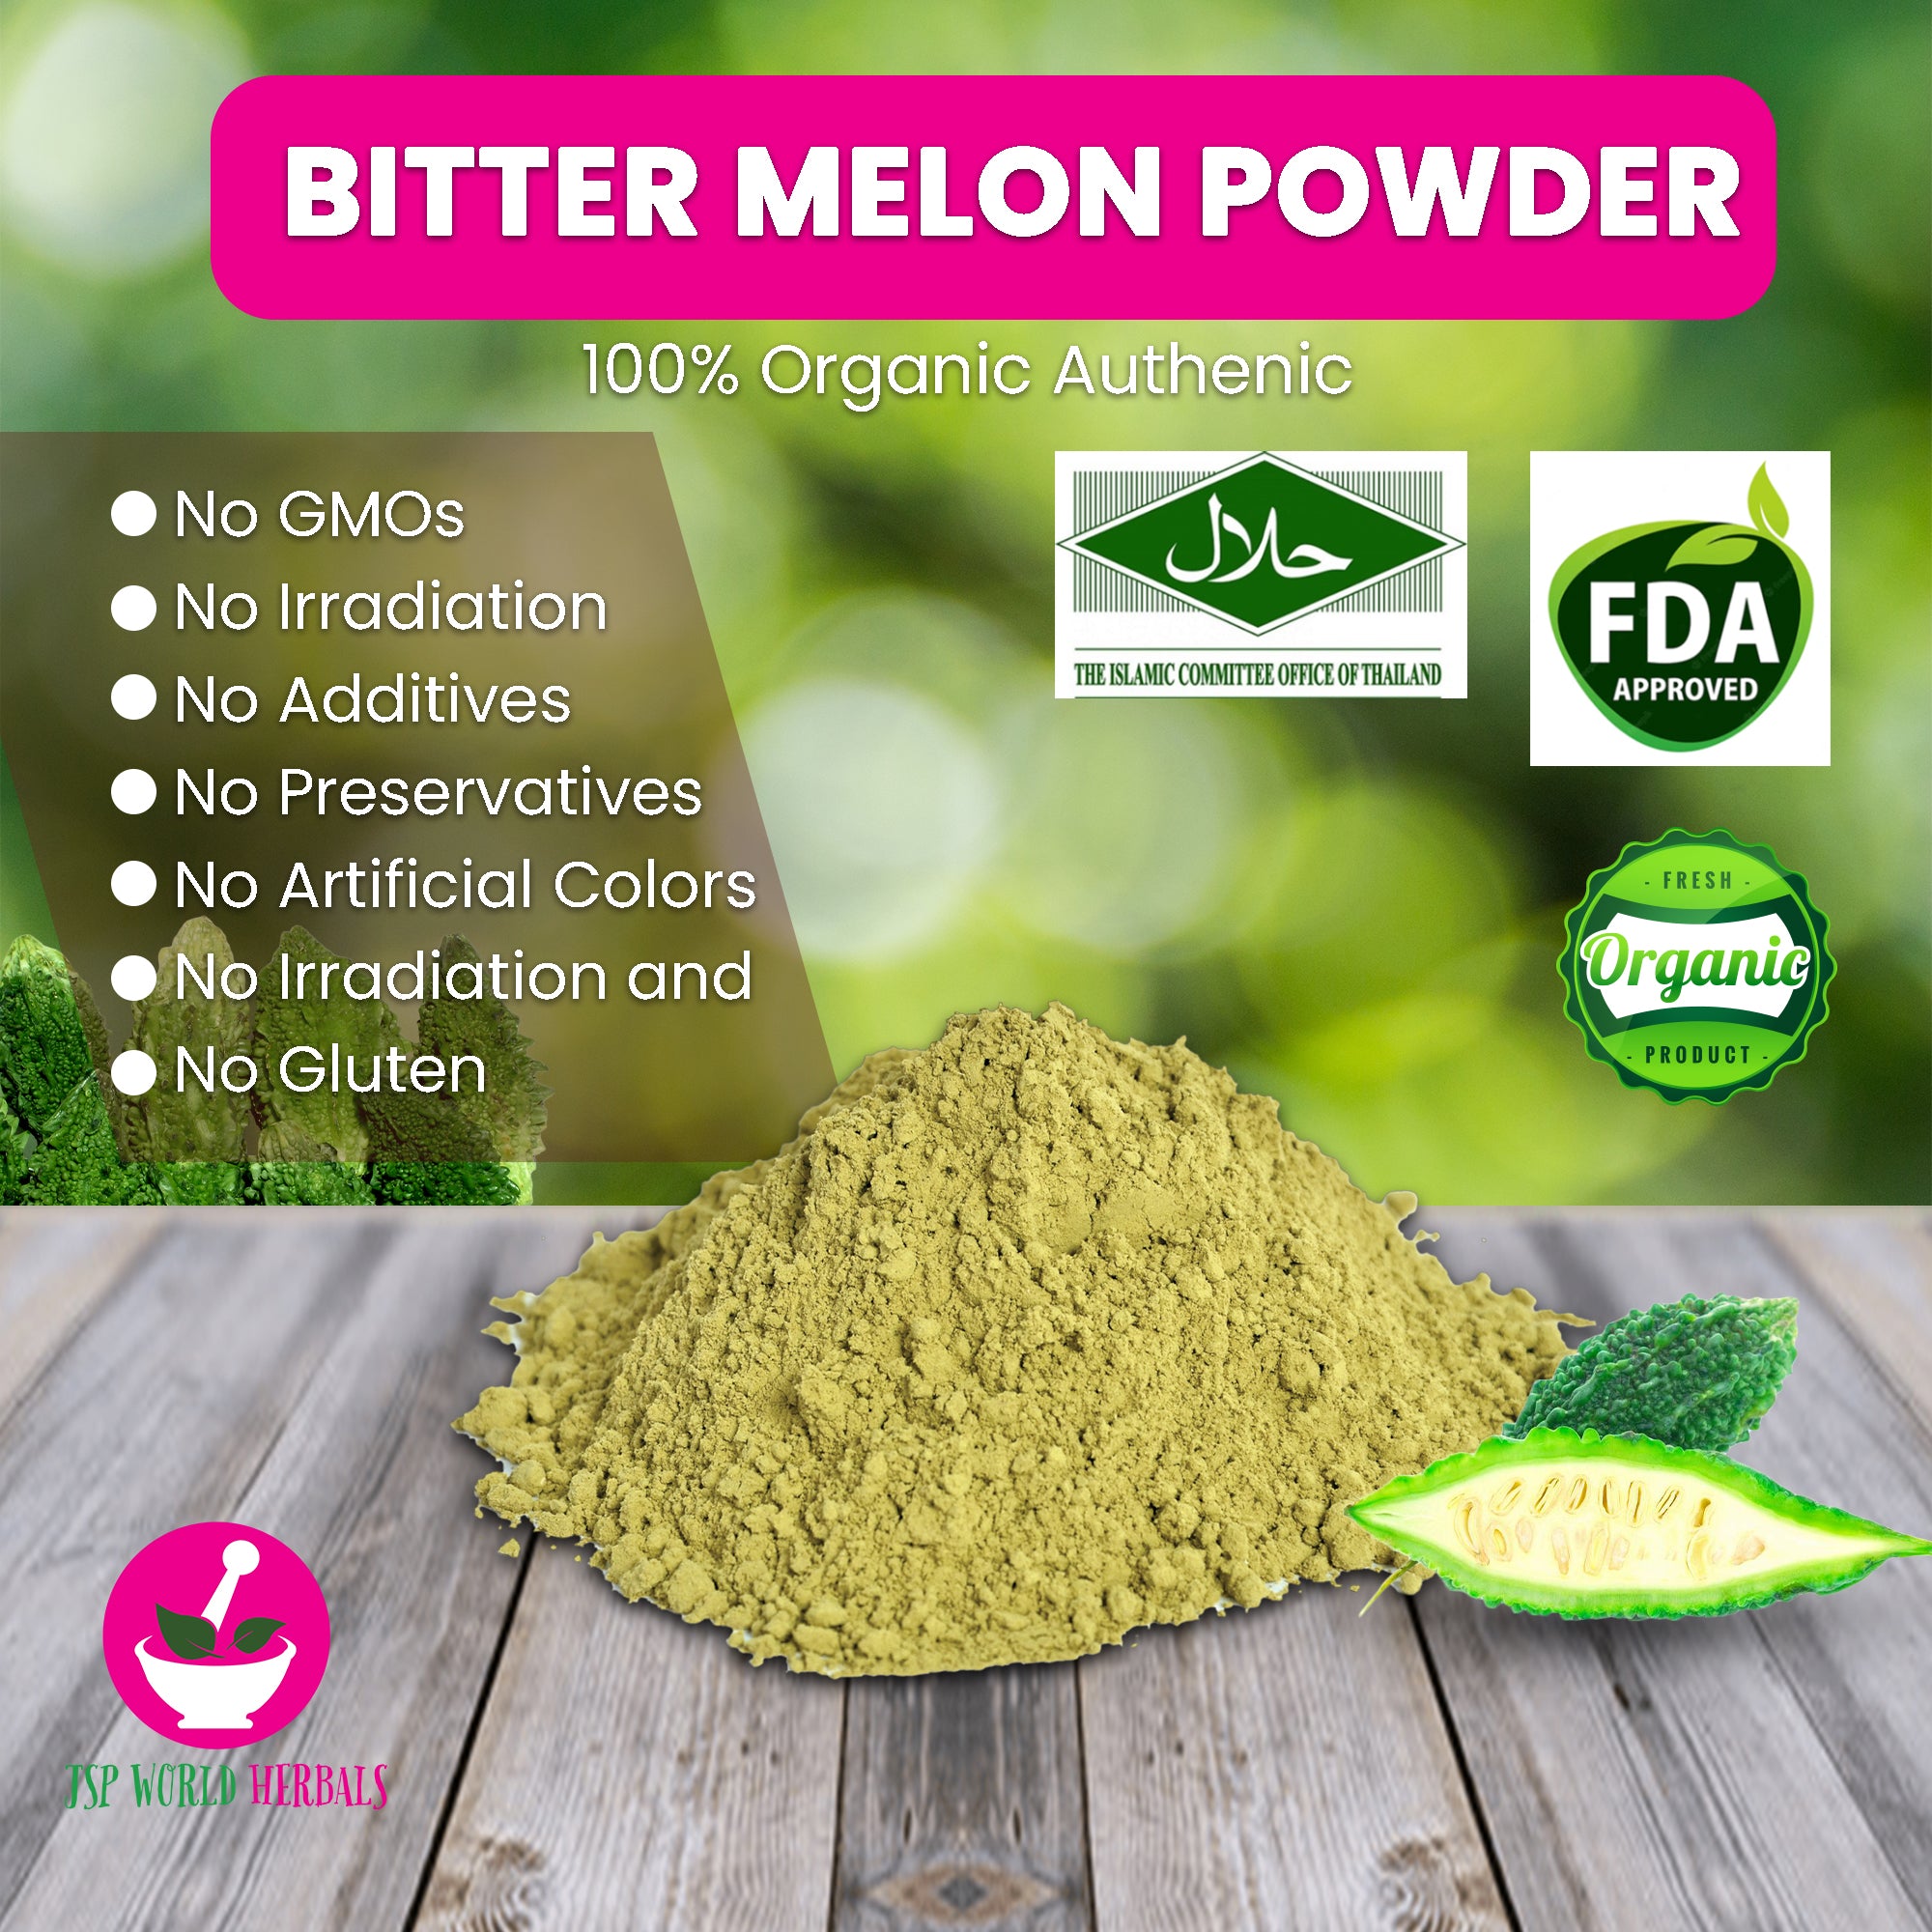 Bitter melon Powder 